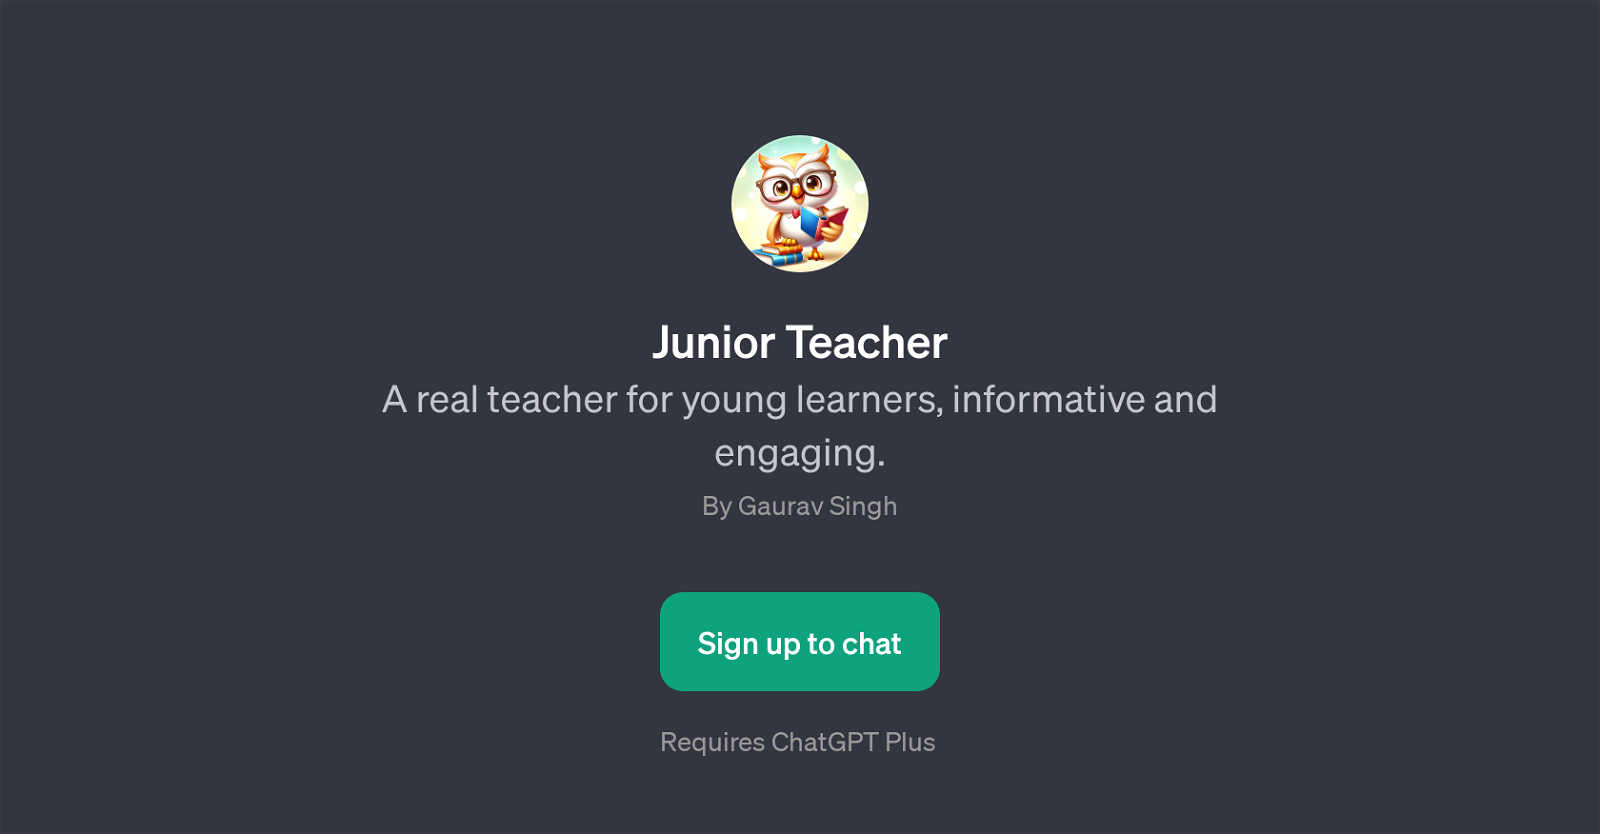 Junior Teacher website